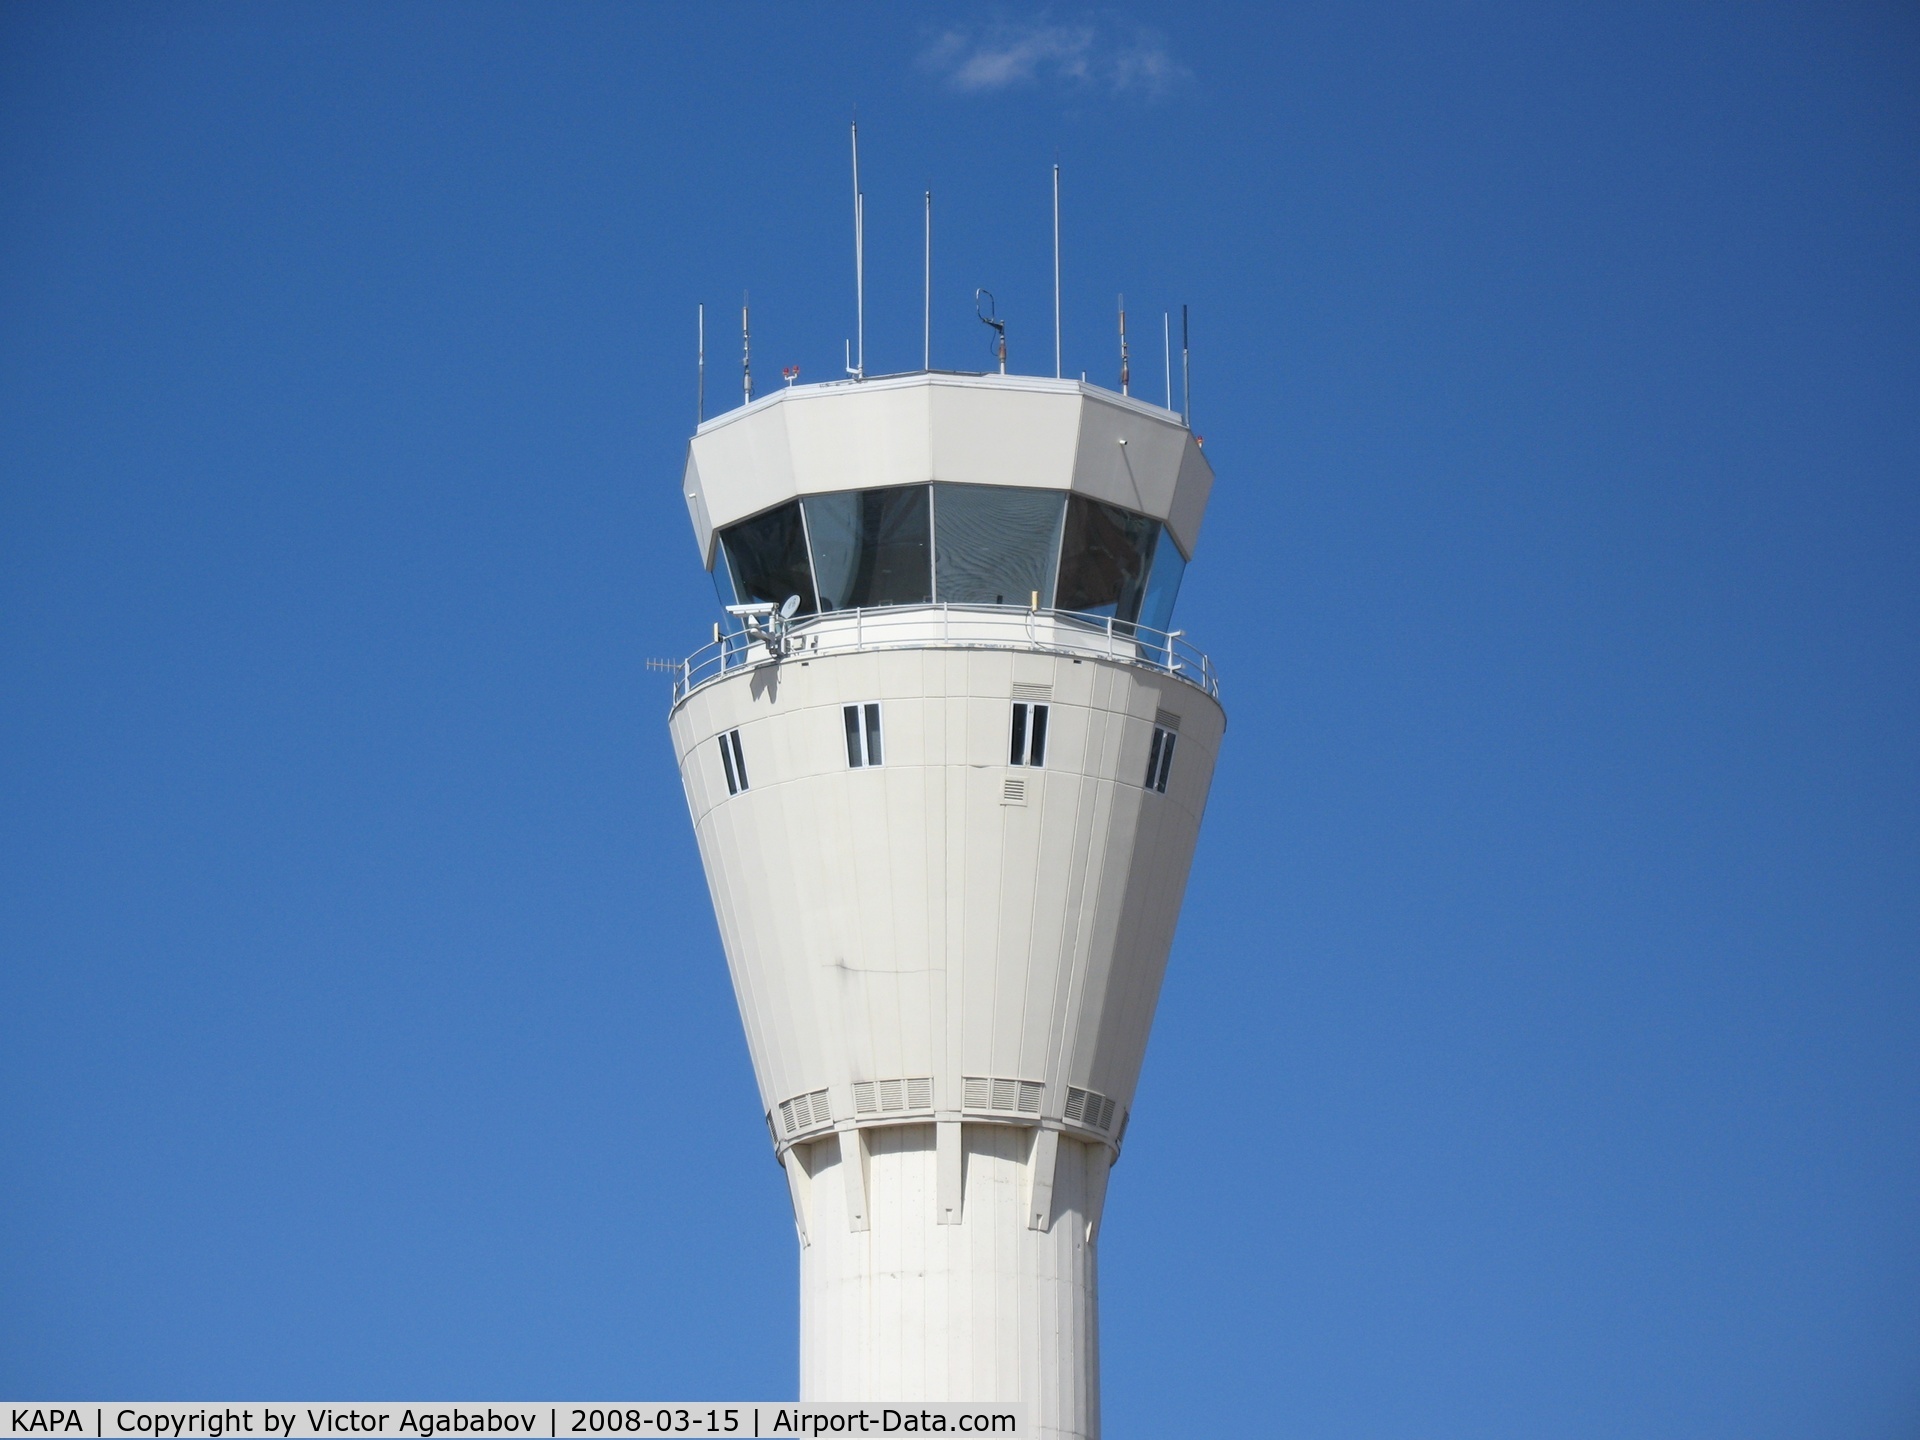 Centennial Airport (APA) - Tower close-up